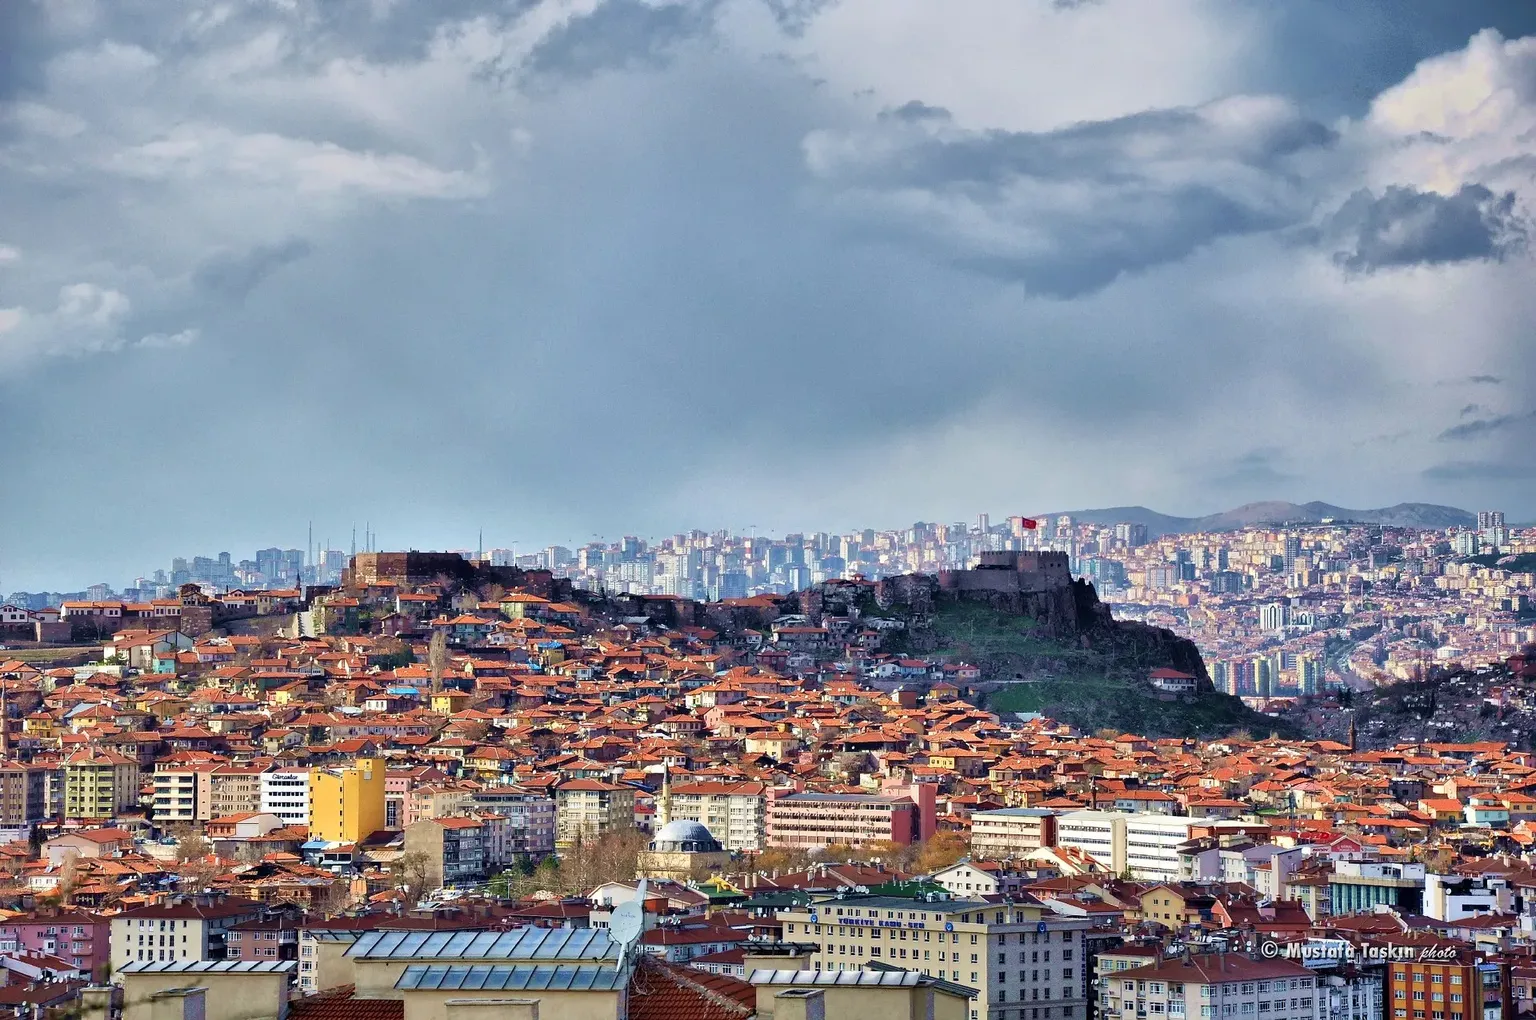 Ankara | Central Anatolia Region, Turkey - Rated 6